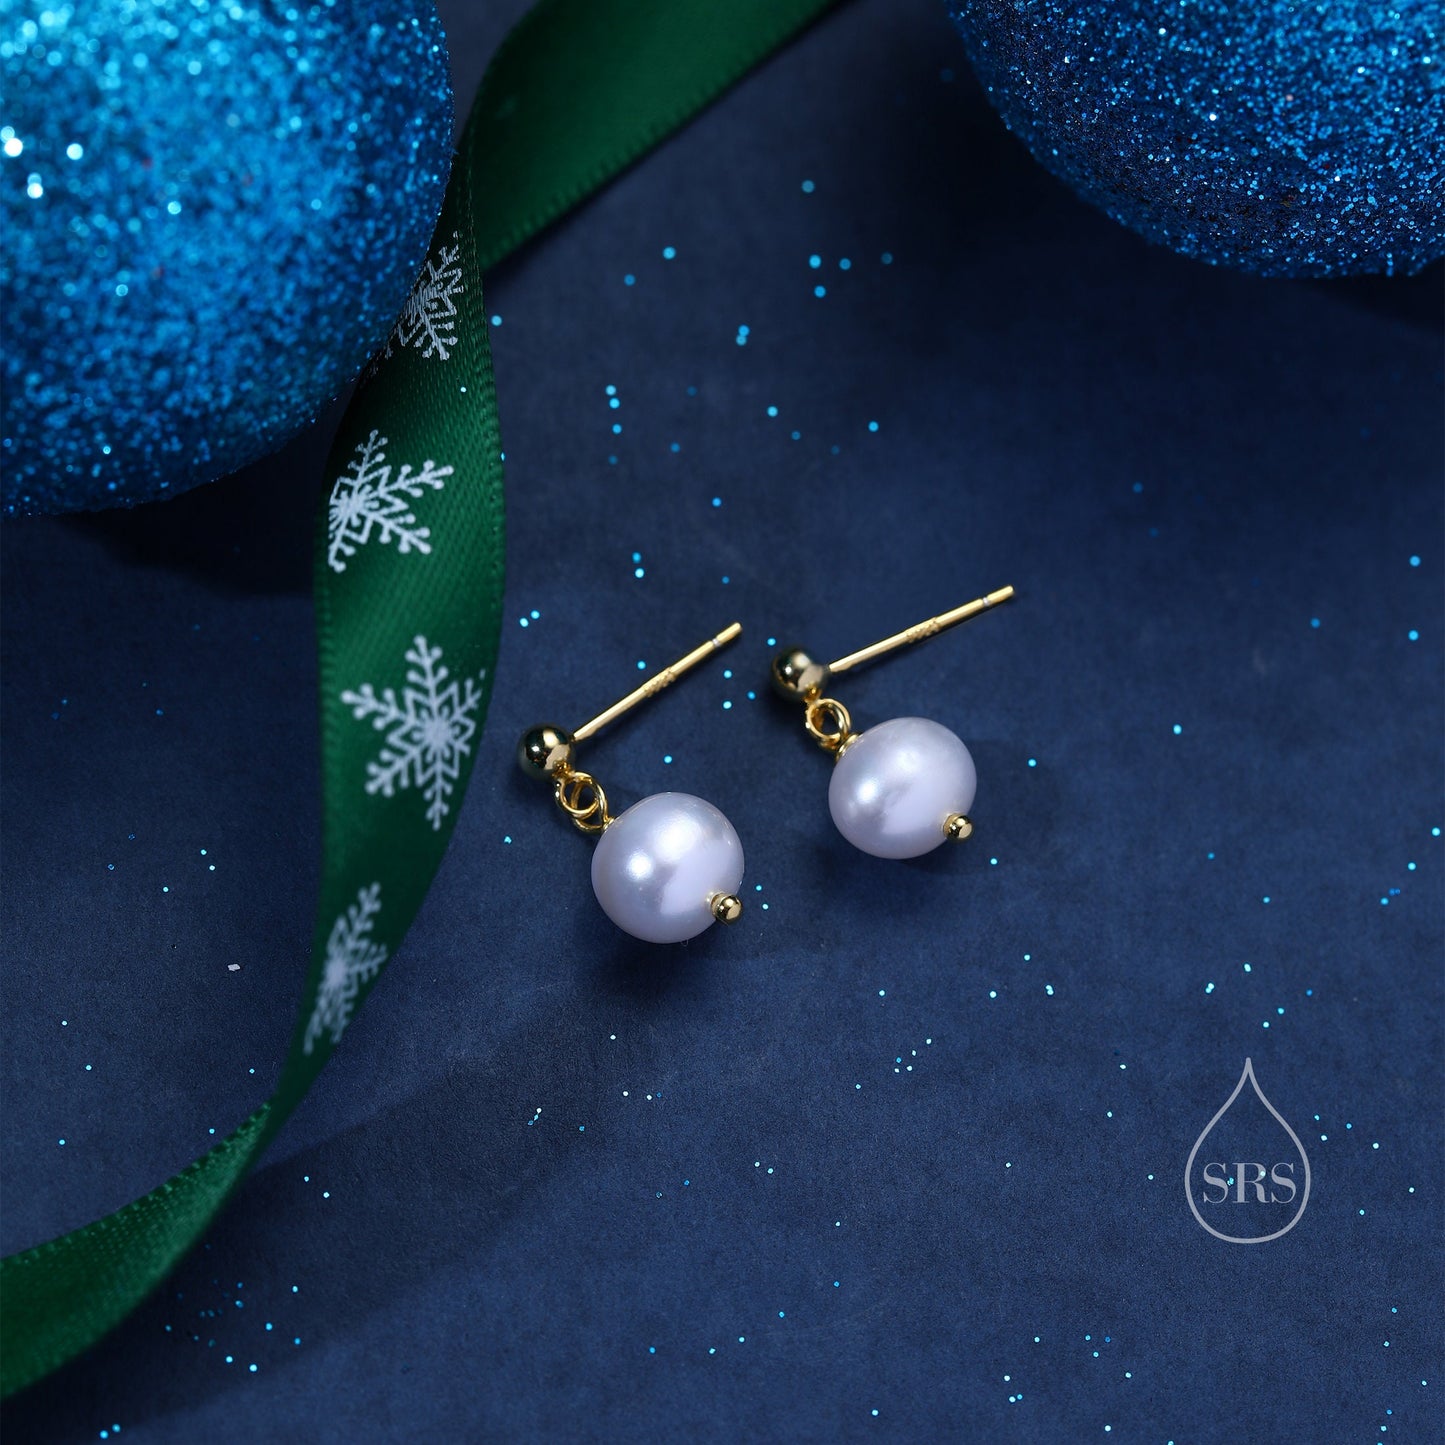 Genuine Freshwater Pearl Drop Earrings in Sterling Silver, Delicate Keshi Pearl Earrings, Pearl Stud Dangle Earrings